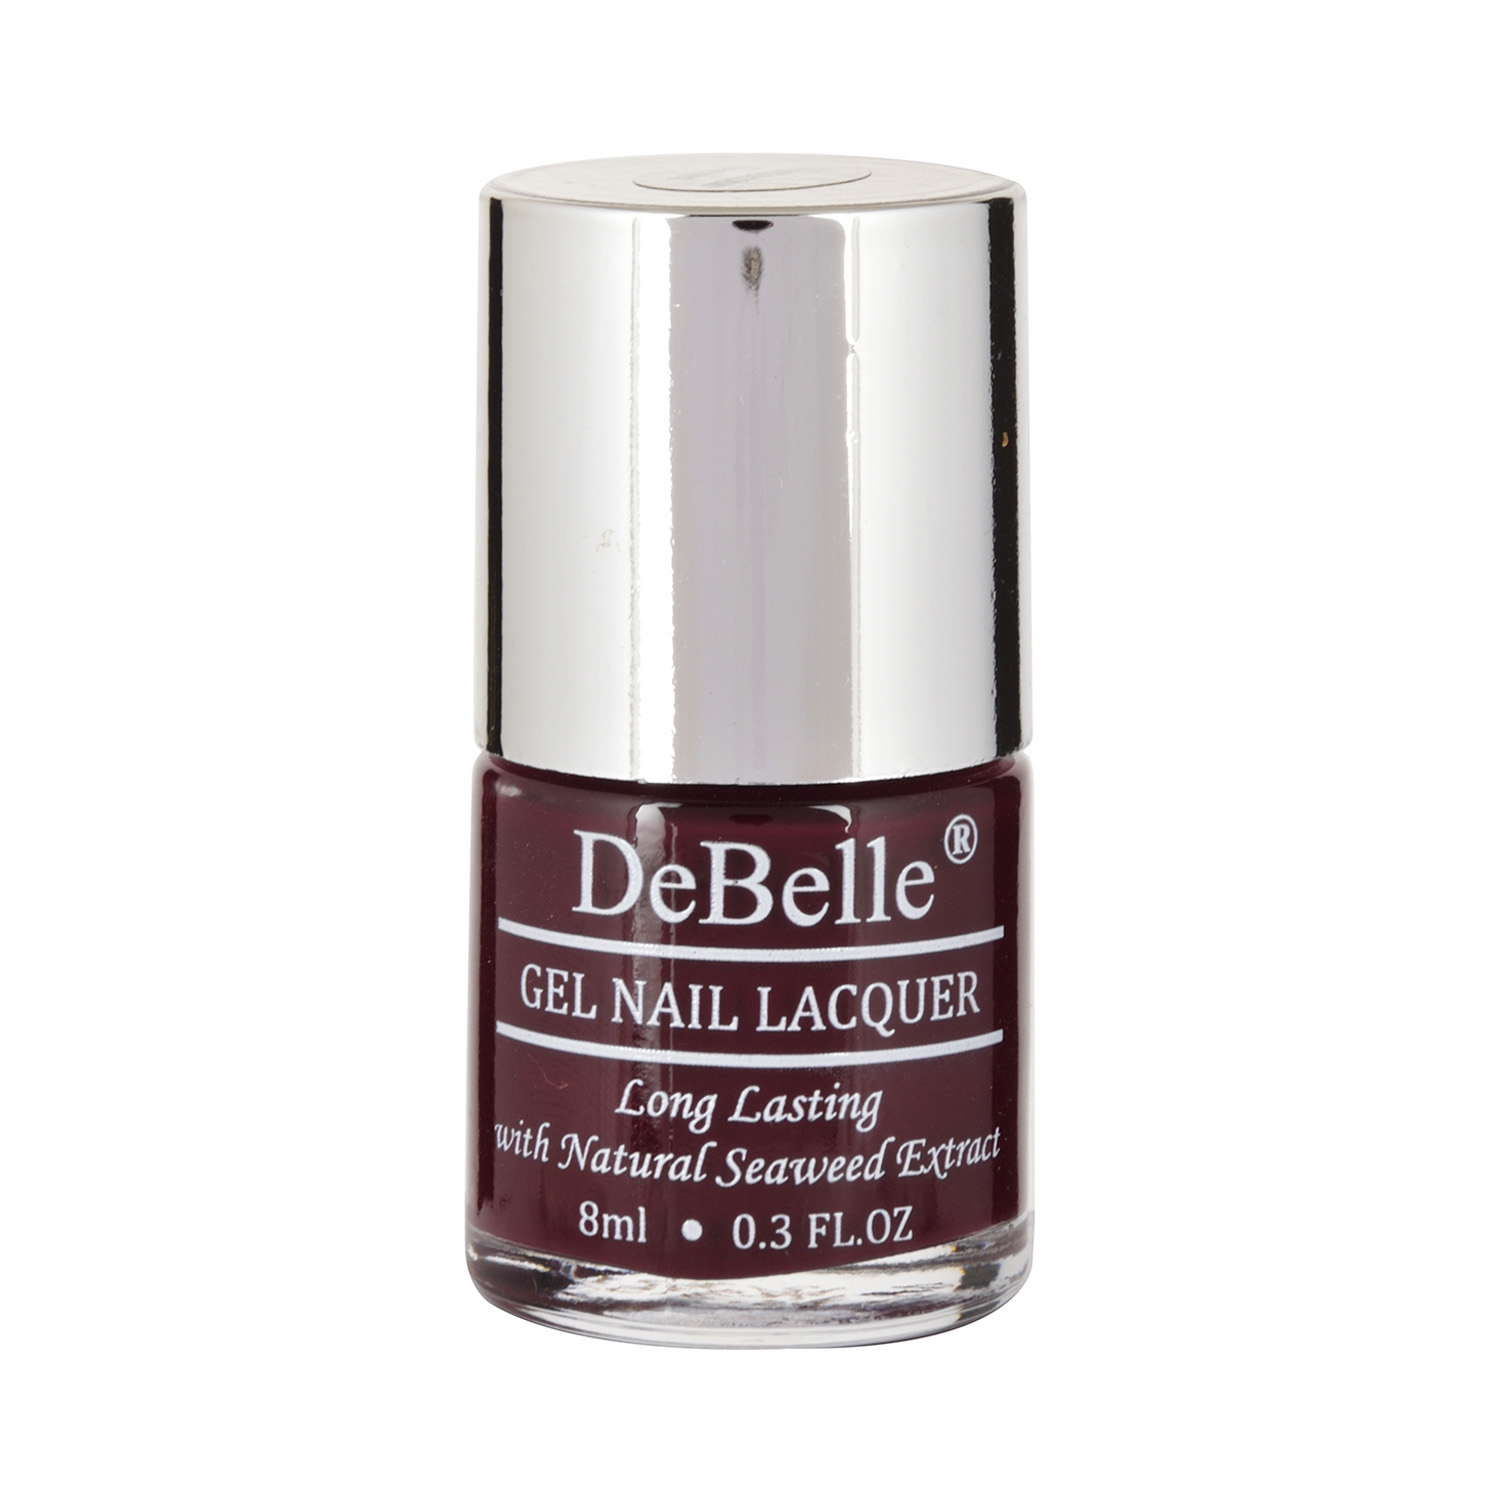 DeBelle | DeBelle Gel Nail Polish - Glamorous Garnet (8ml)